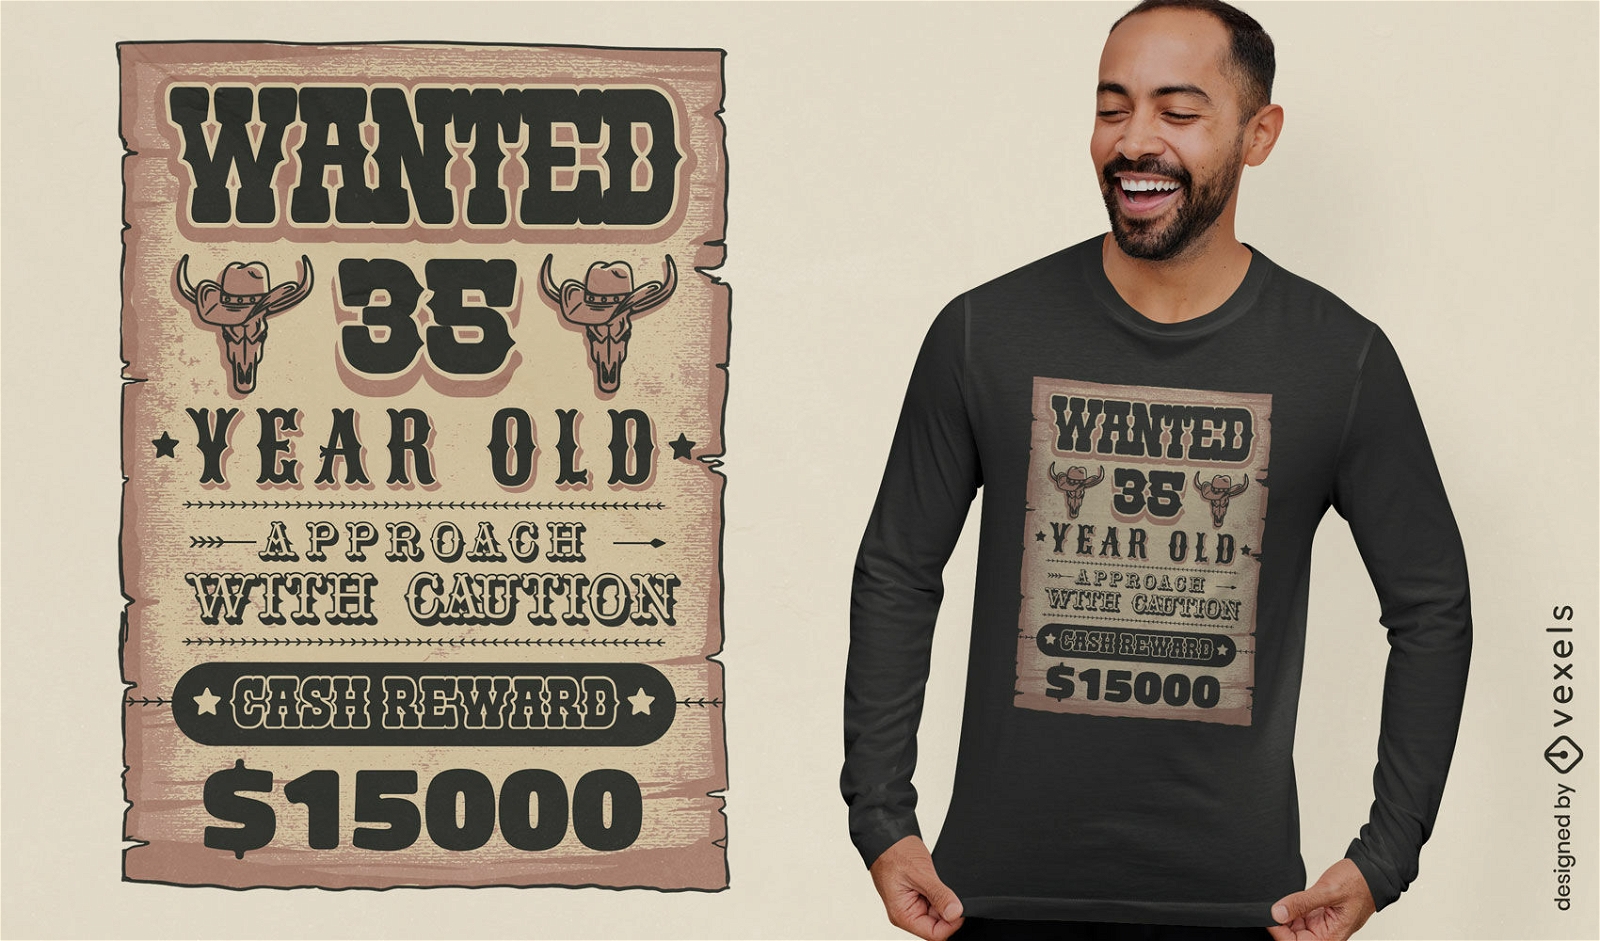 Wild west birthday sign t-shirt design